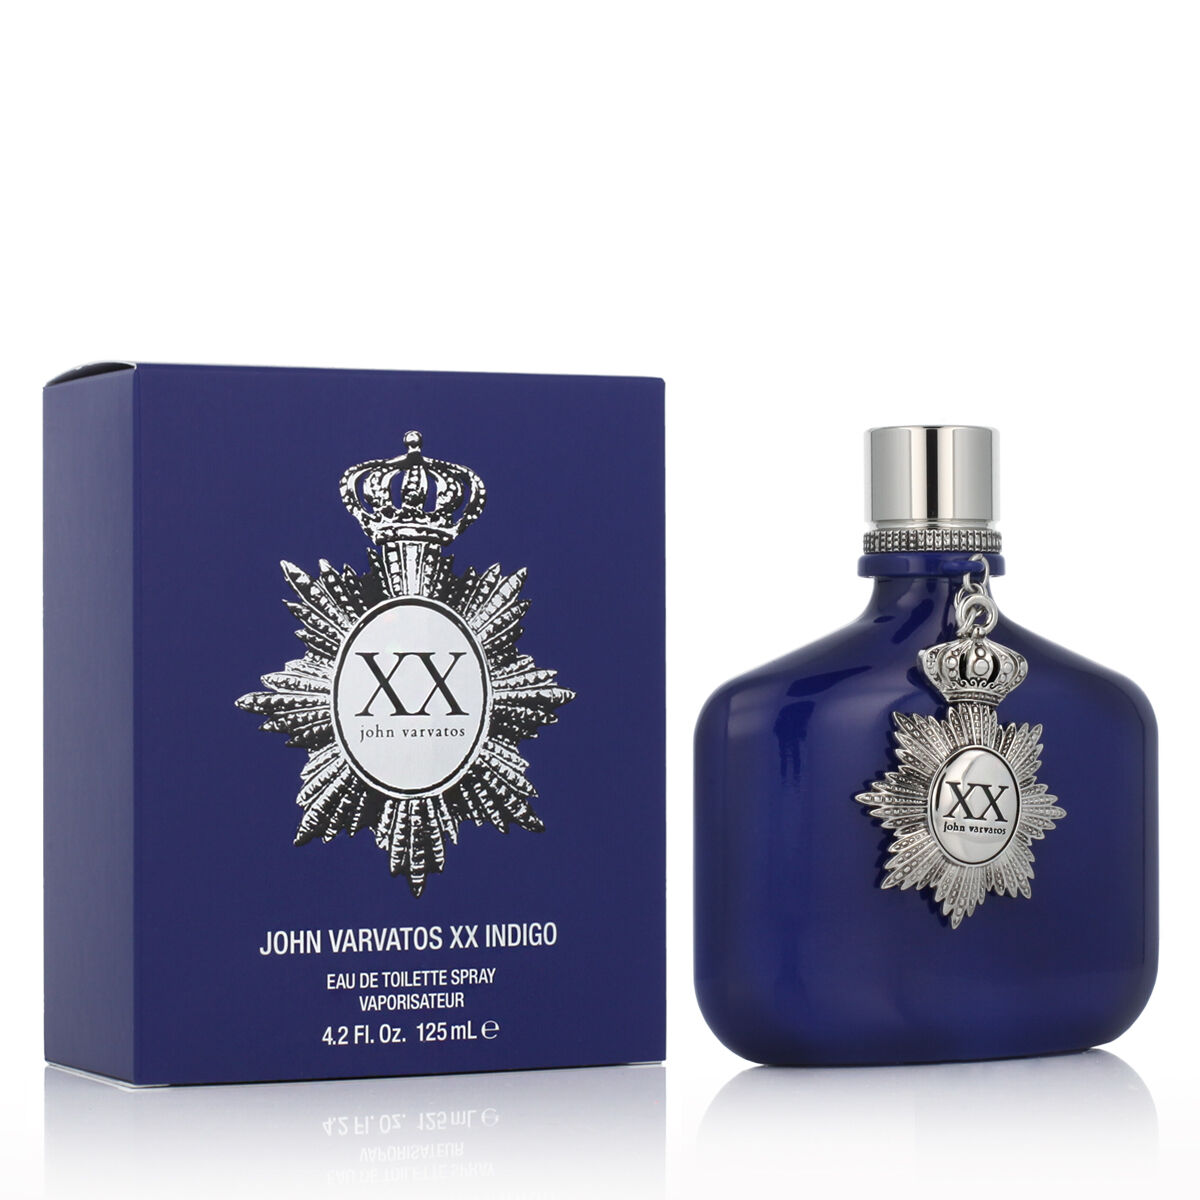 Parfum Homme John Varvatos EDT Xx Indigo 125 ml